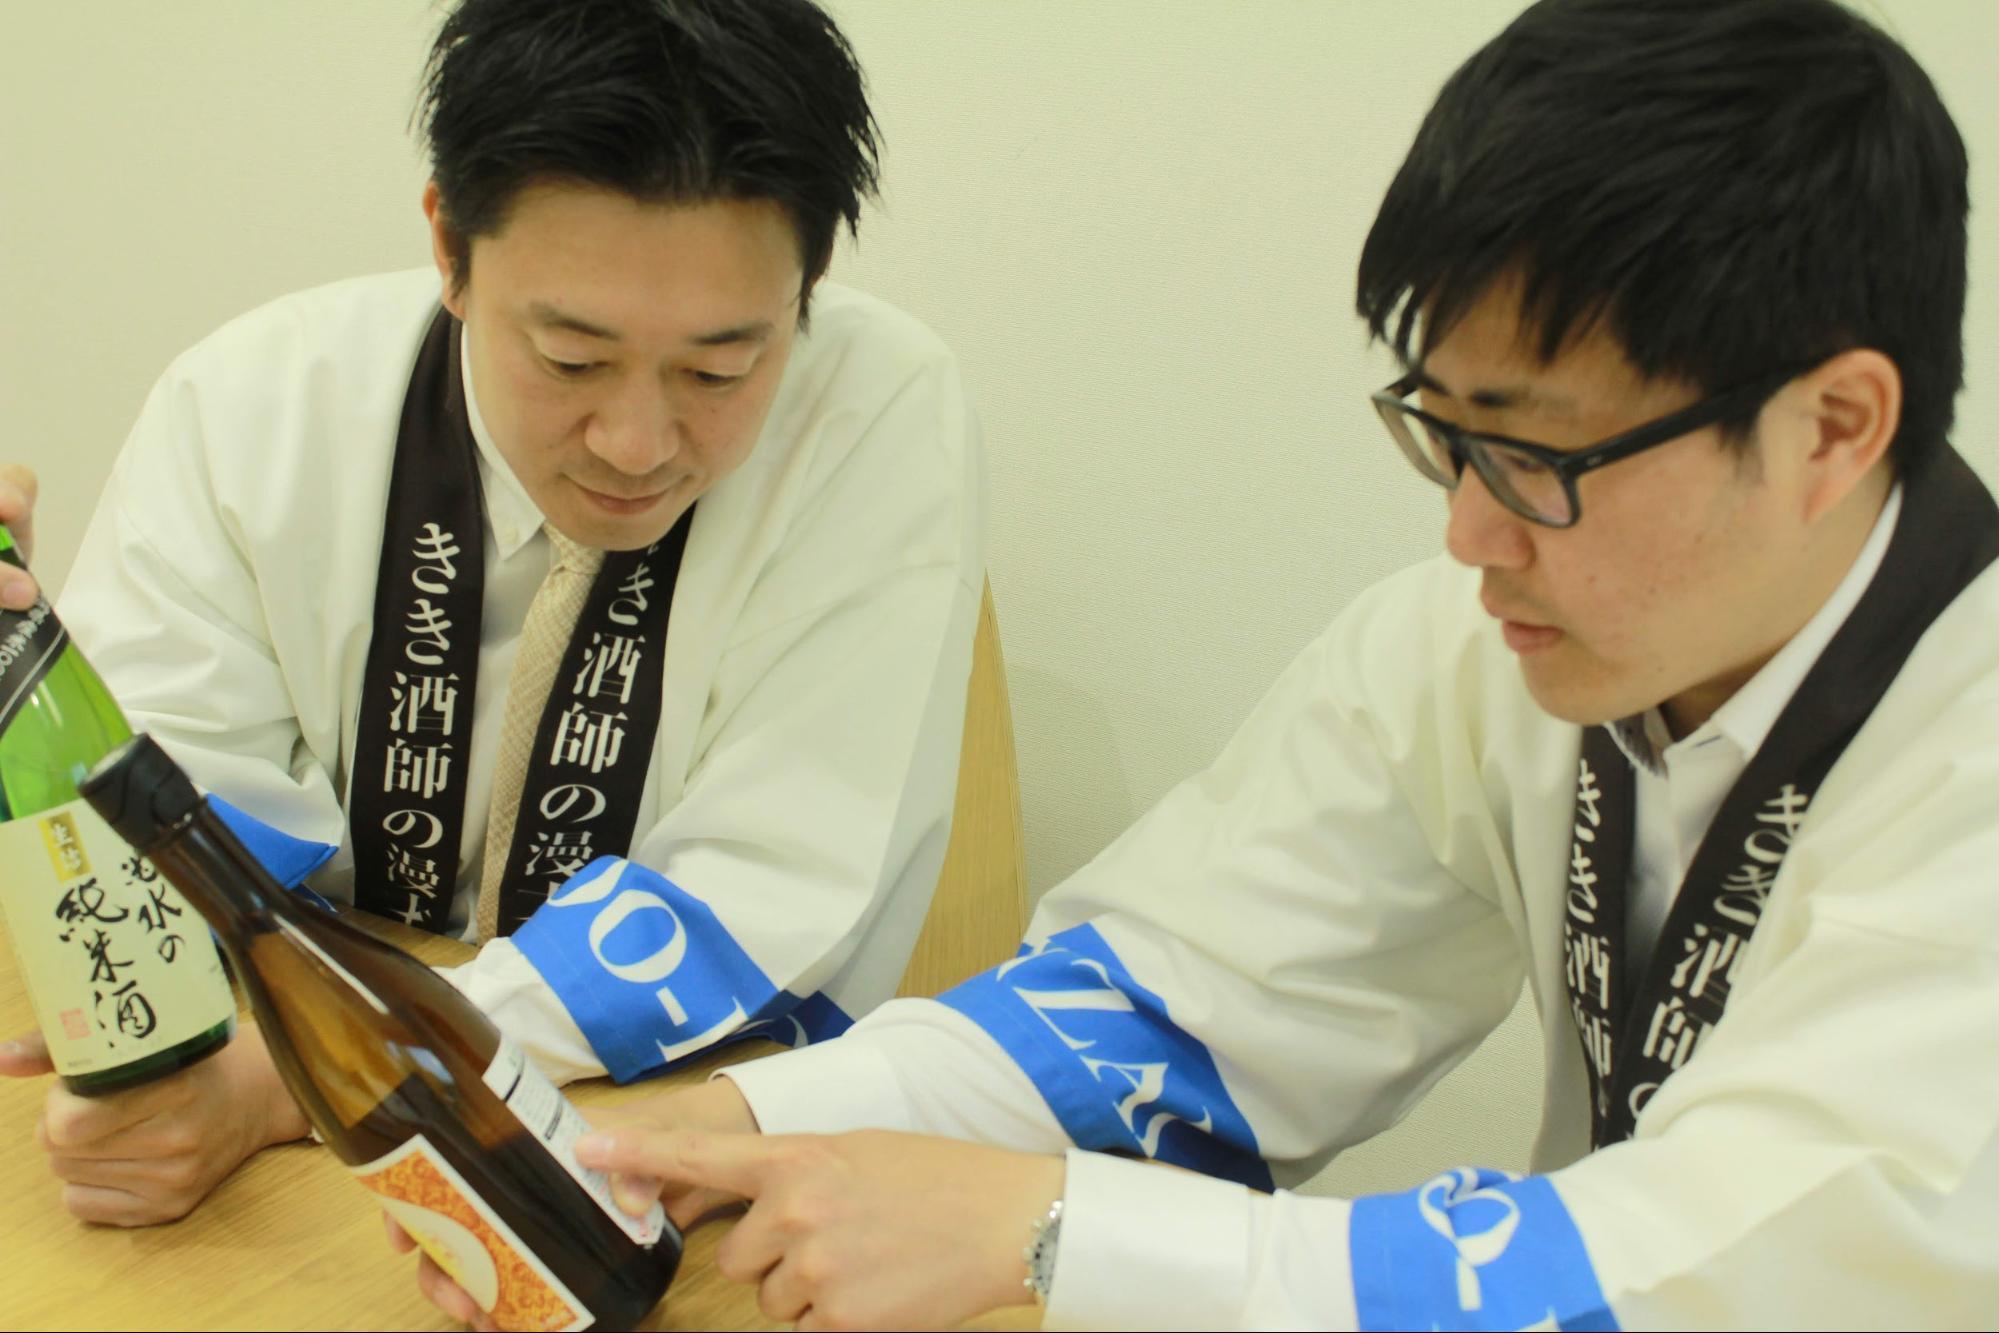 吟醸、純米…日本酒の種類と特徴を解説--保存法や料理の相性も(後編)